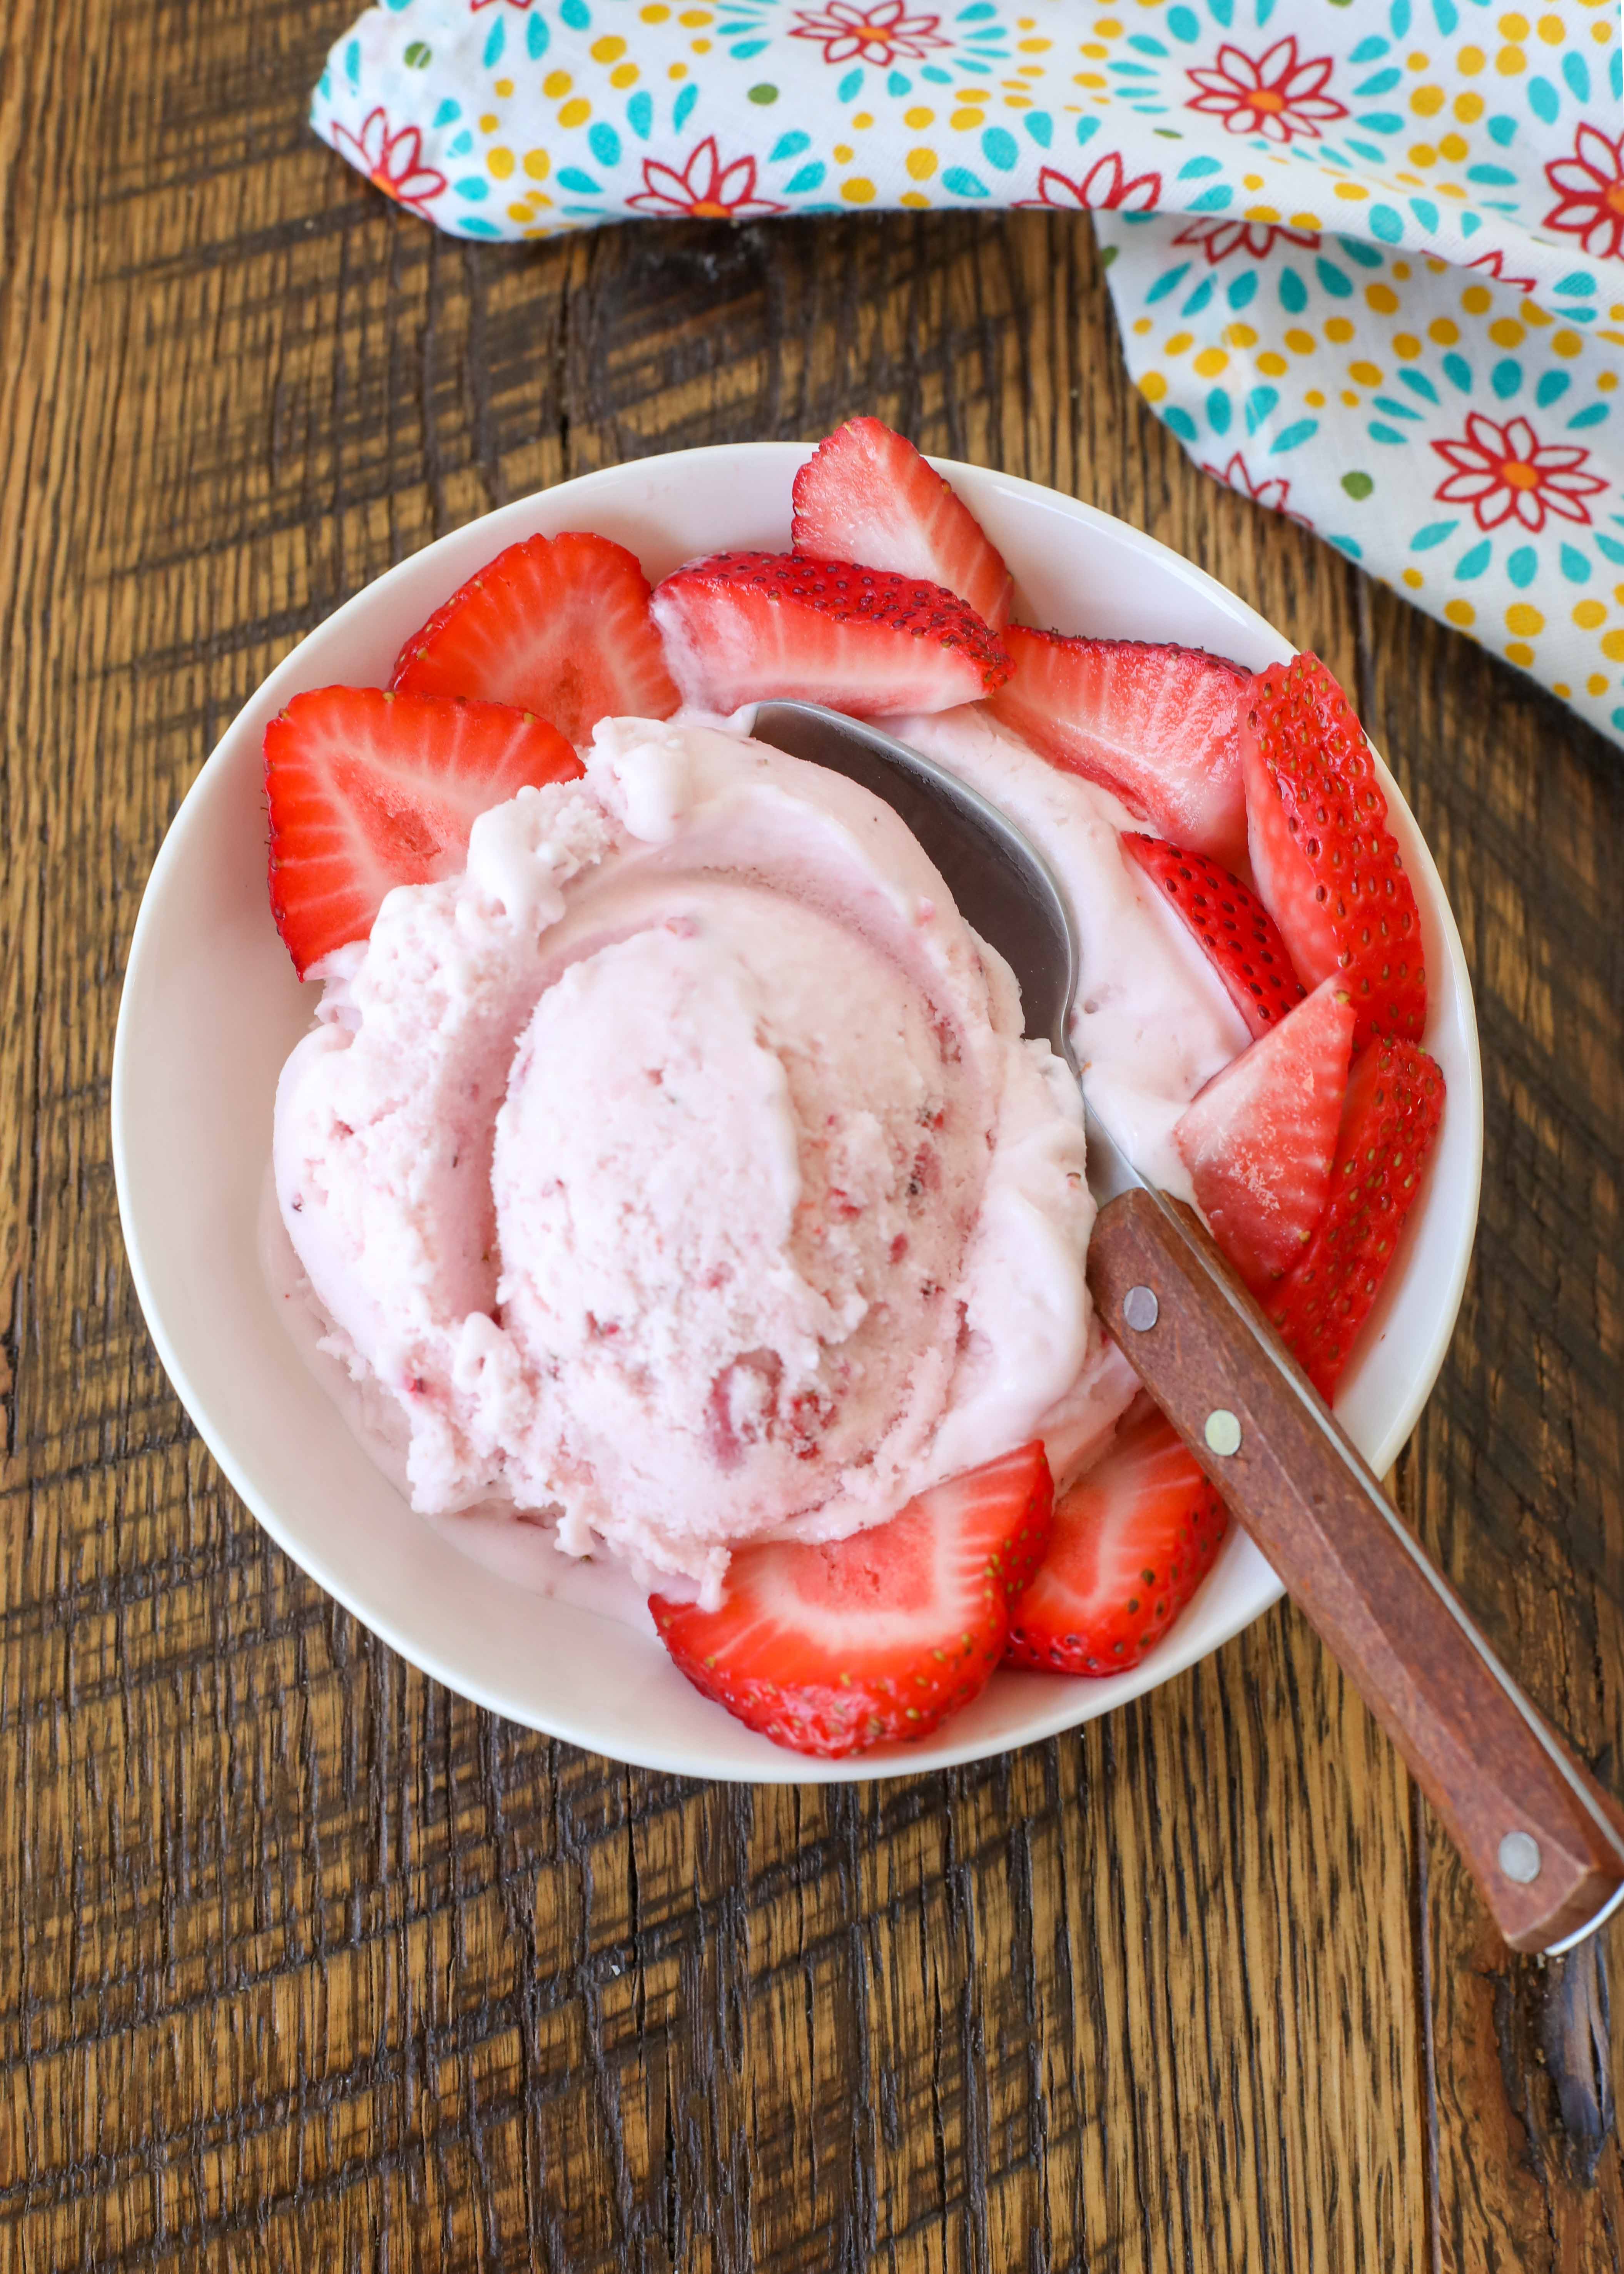 https://barefeetinthekitchen.com/wp-content/uploads/2022/06/Strawberry-Ice-Cream-5-1-of-1.jpg